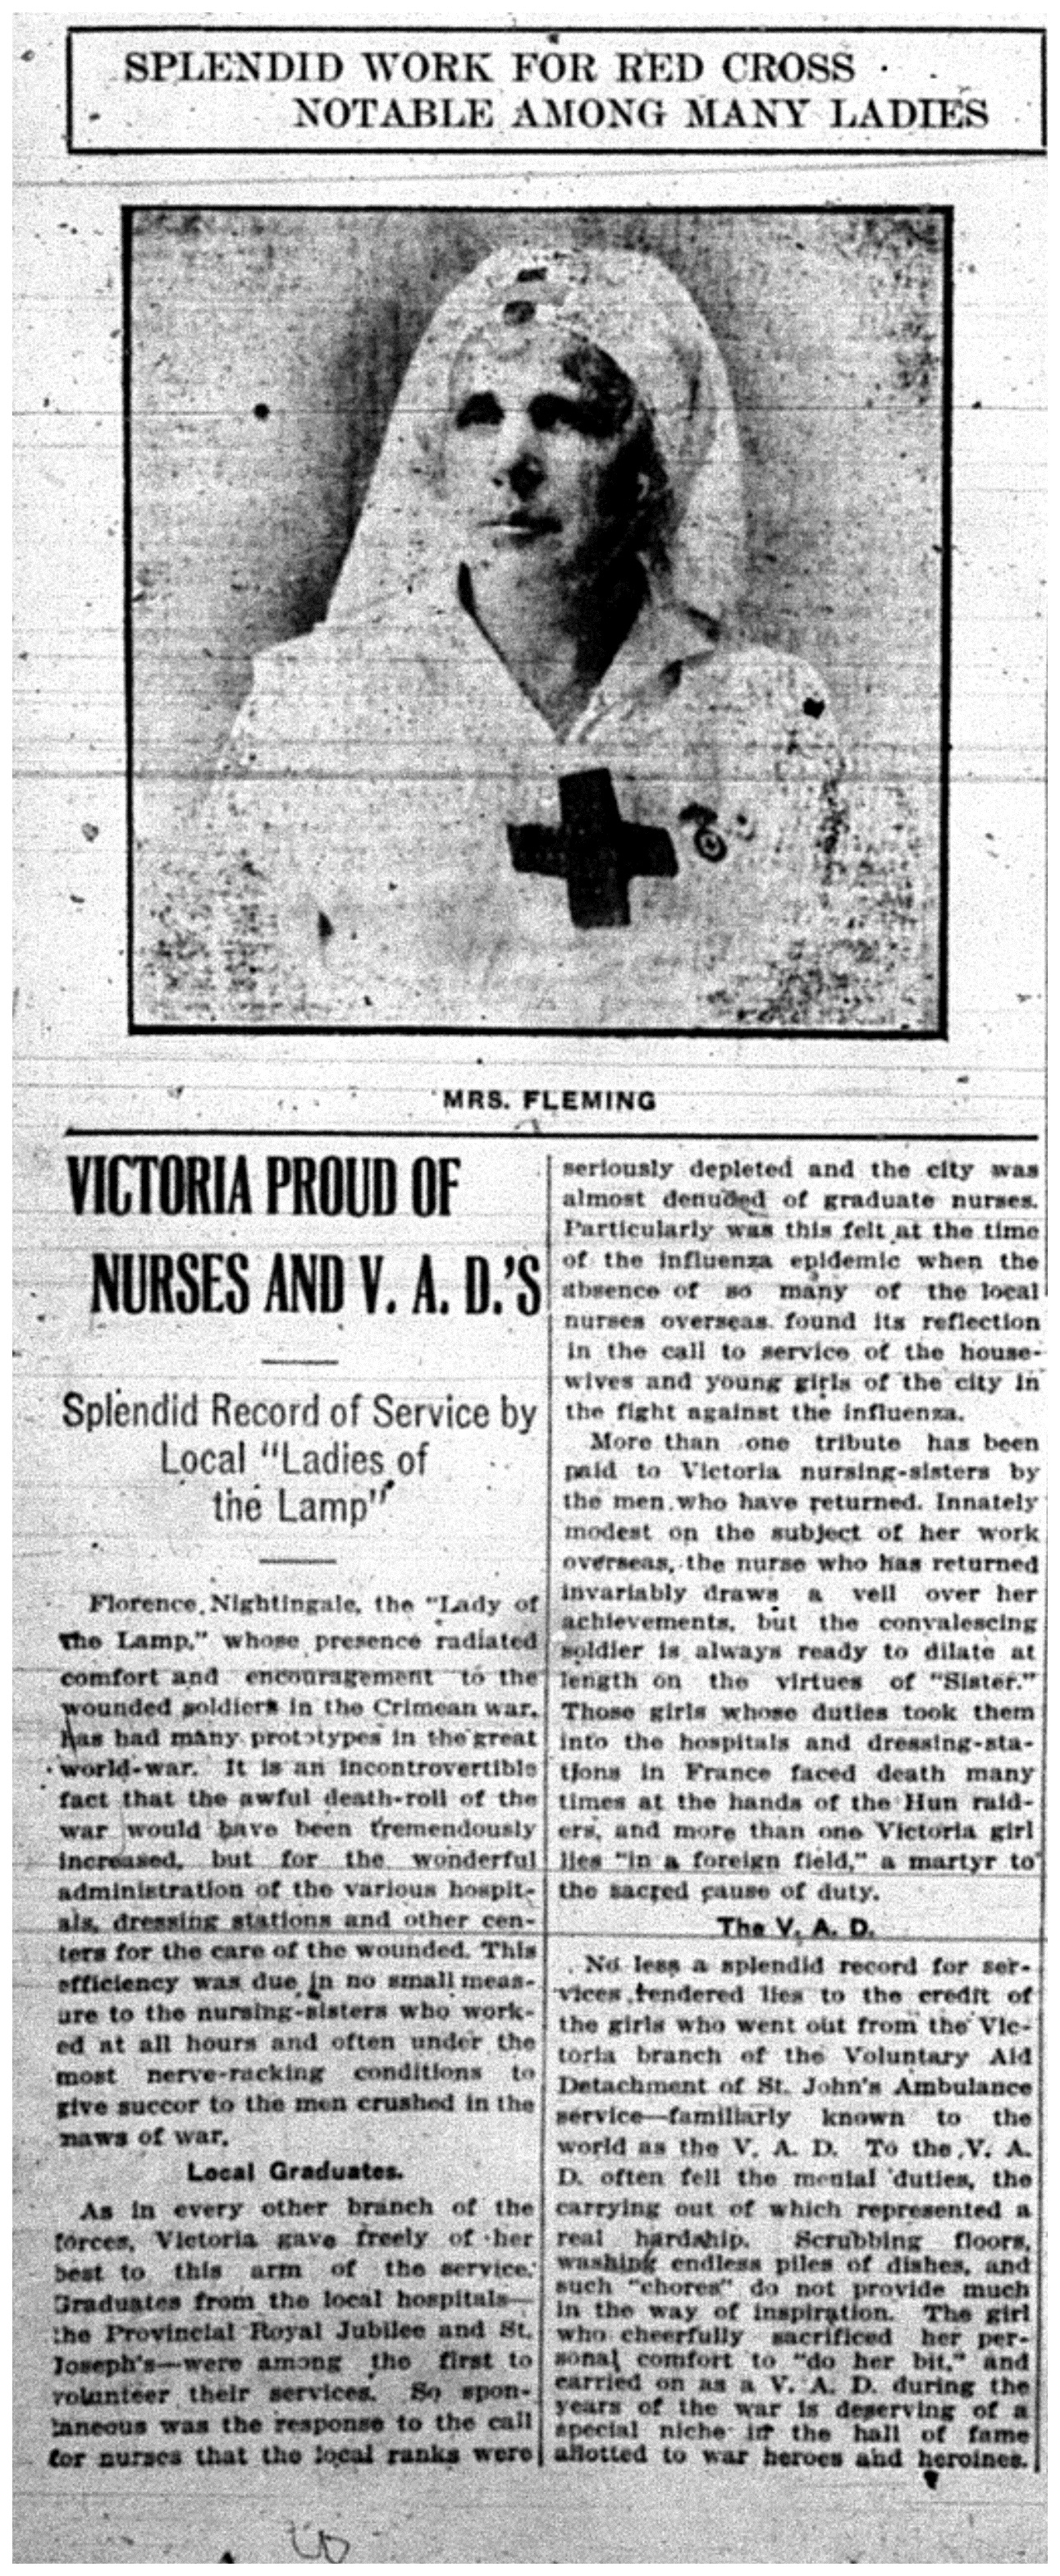 "Victoria Proud of Nurses and V.A.D.'s"